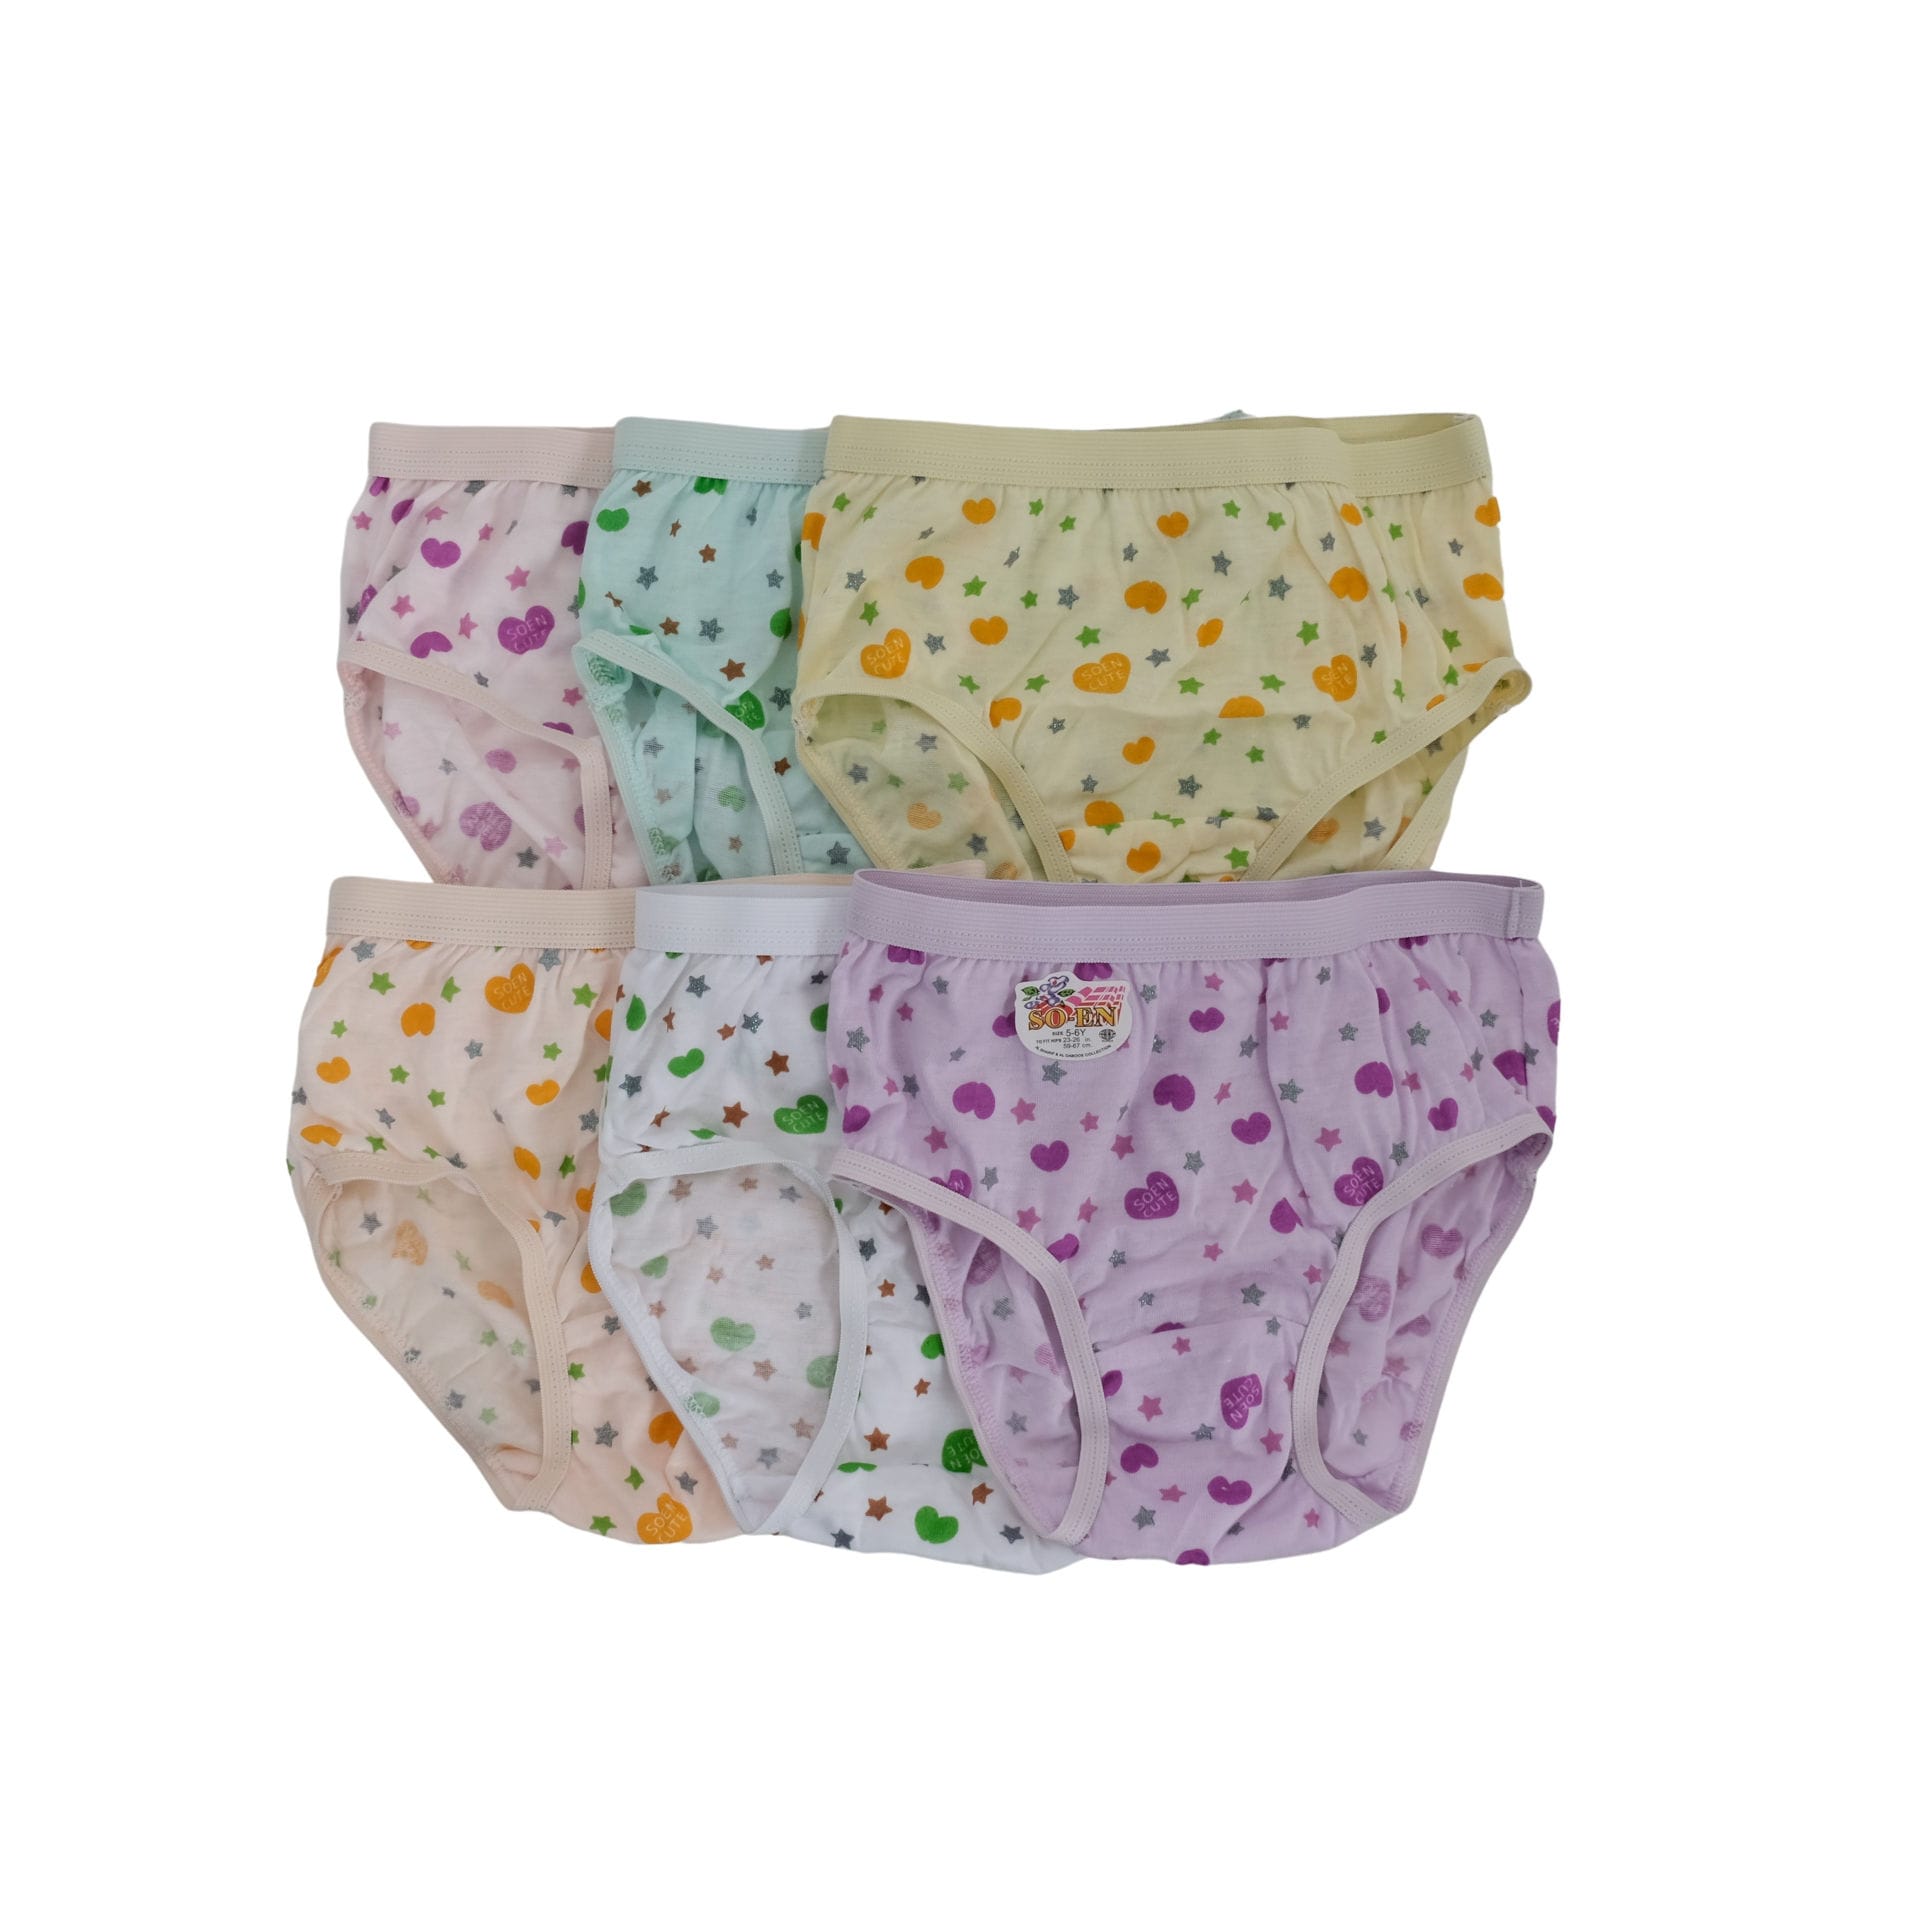 Shop So-En Girls Printed Underwear, Assorted 6 Pcs, Multicolor